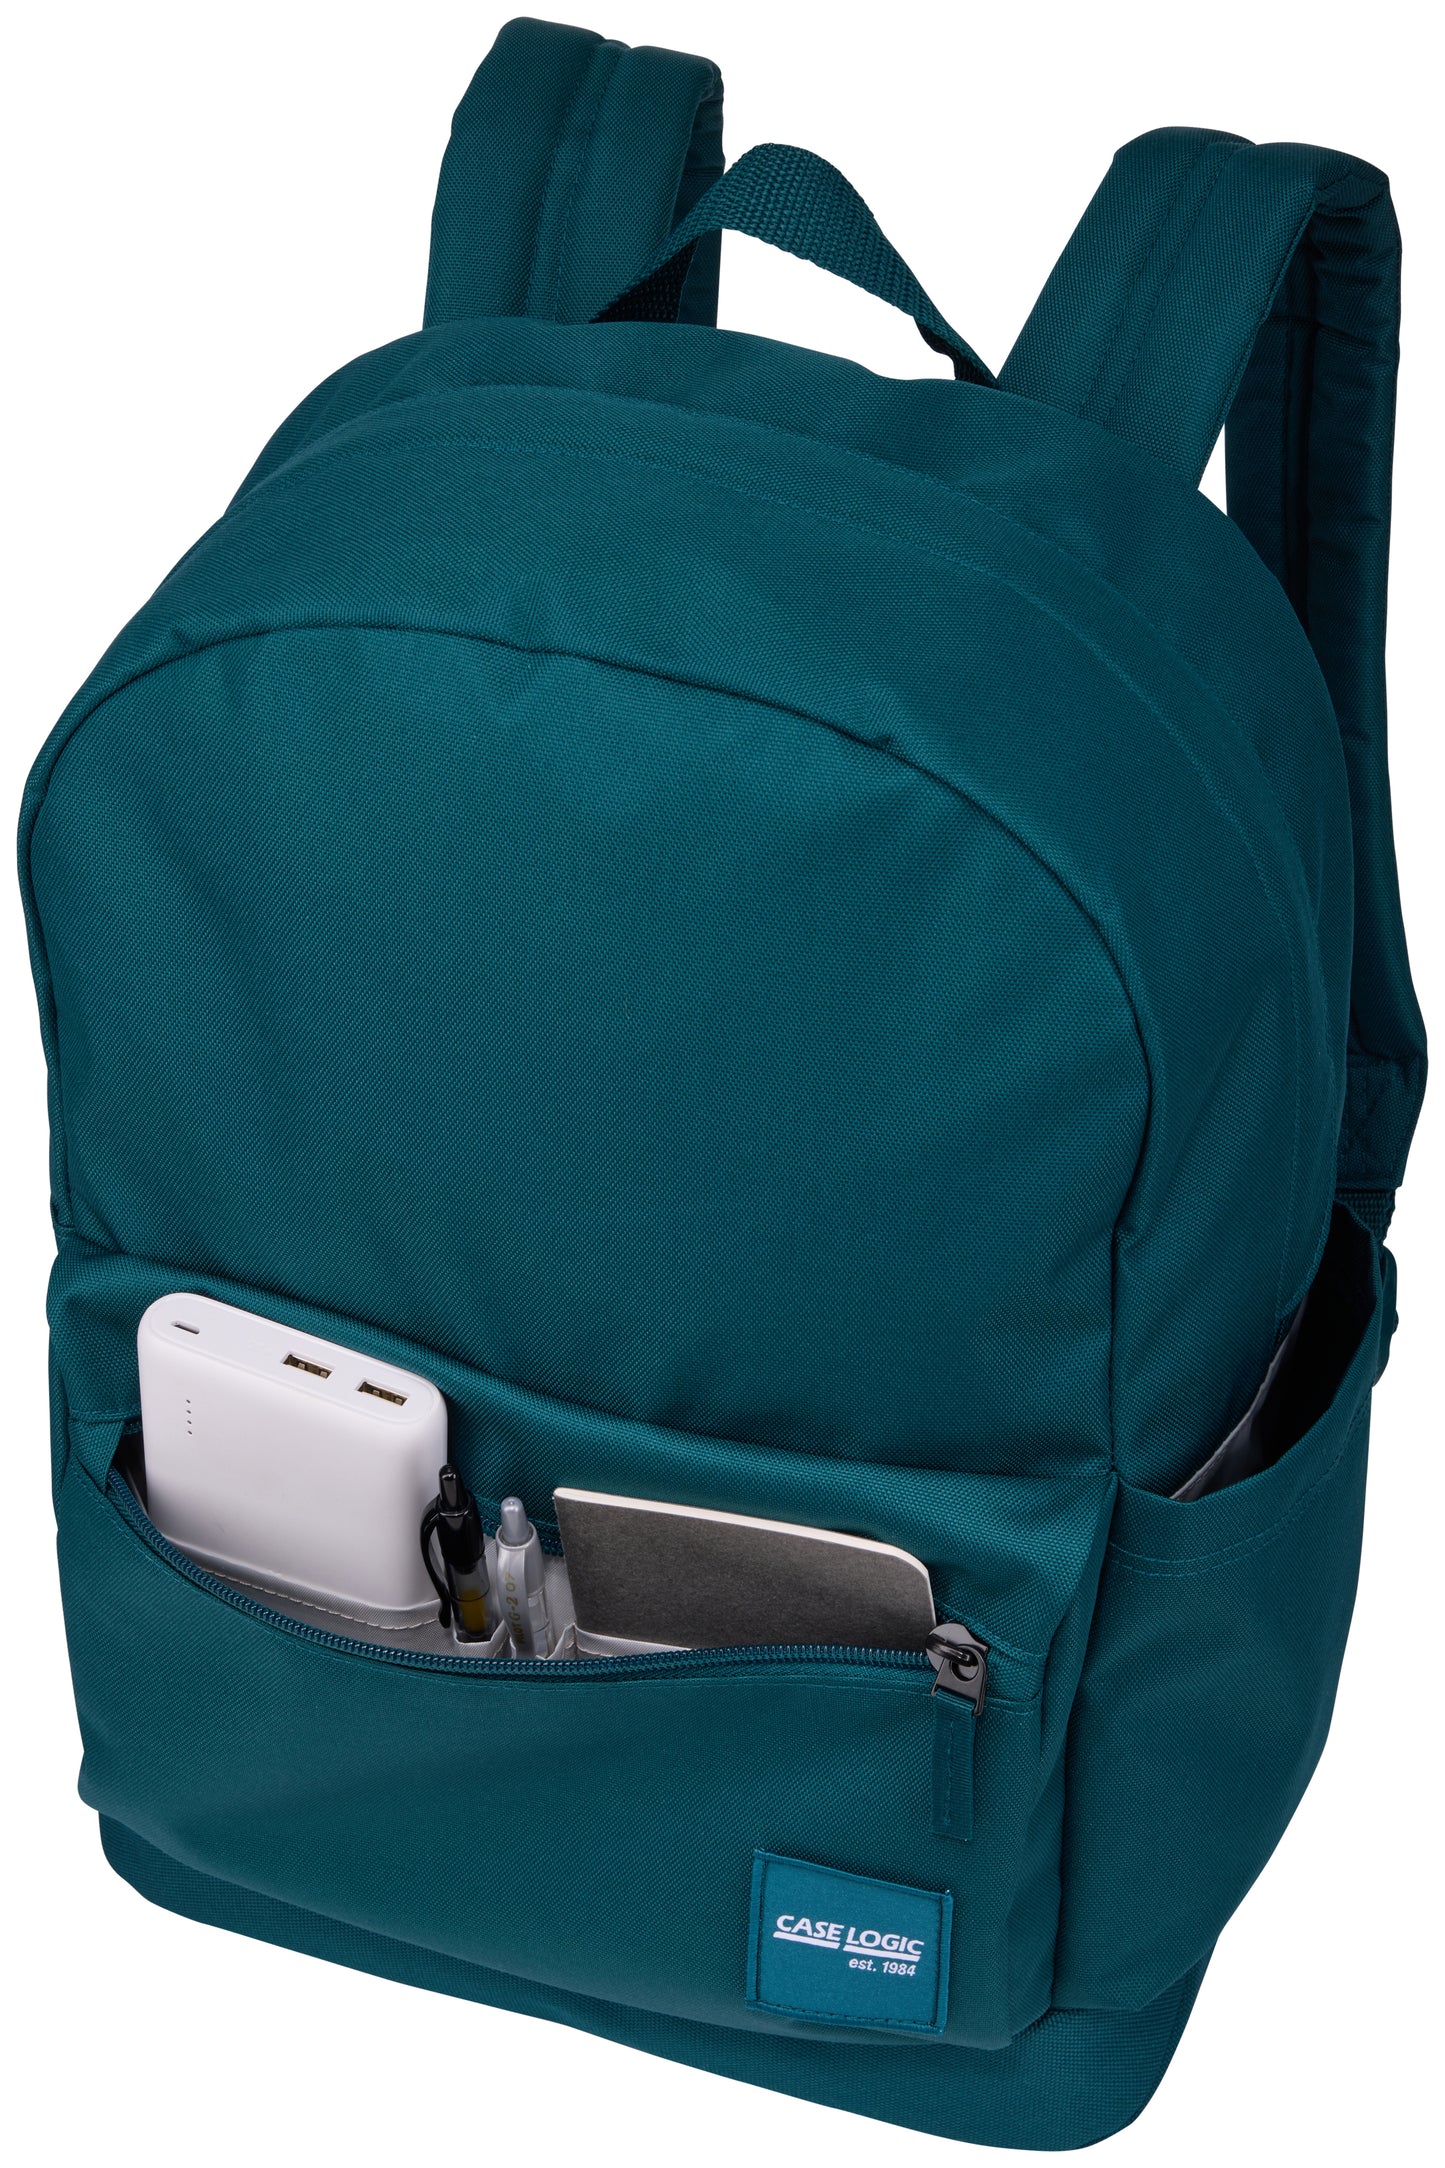 Campus 26L Backpack 15.6" Case Logic CCAM-5226 Teal